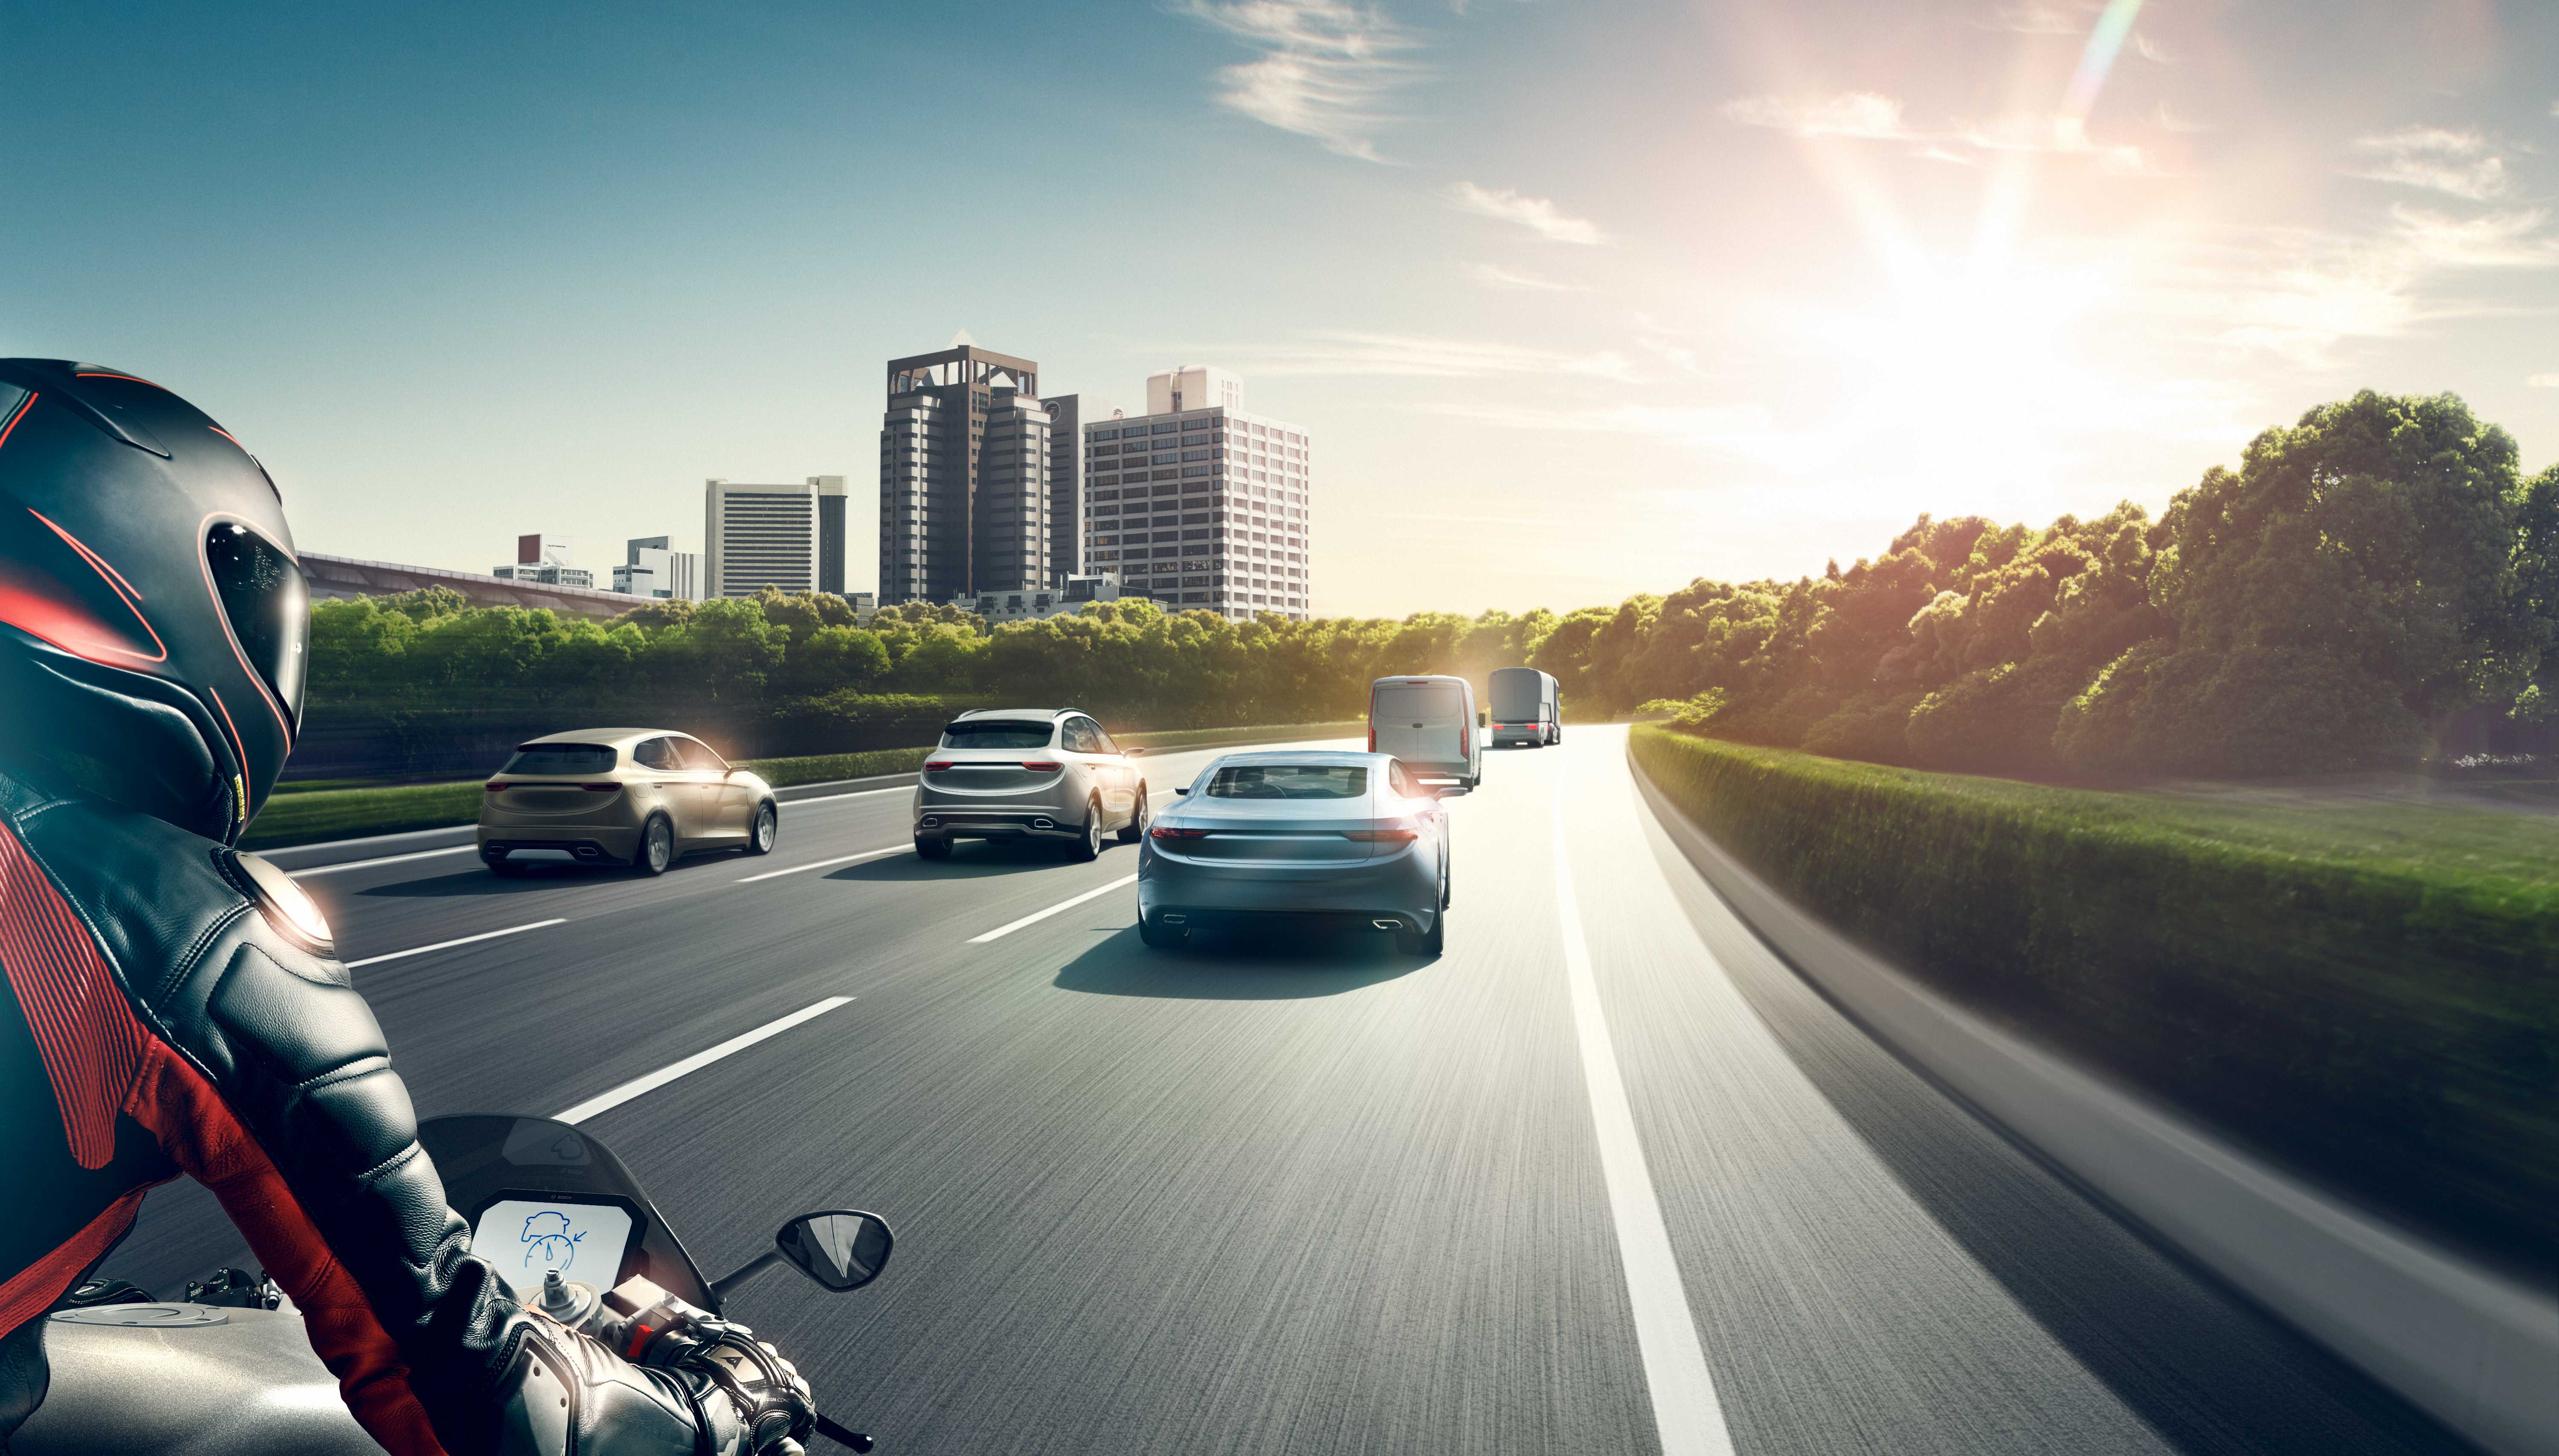 EICMA 2018: Le innovazioni Bosch nel settore dei veicoli a due ruote e powersport sono concepite per soddisfare le funzionalità del futuro